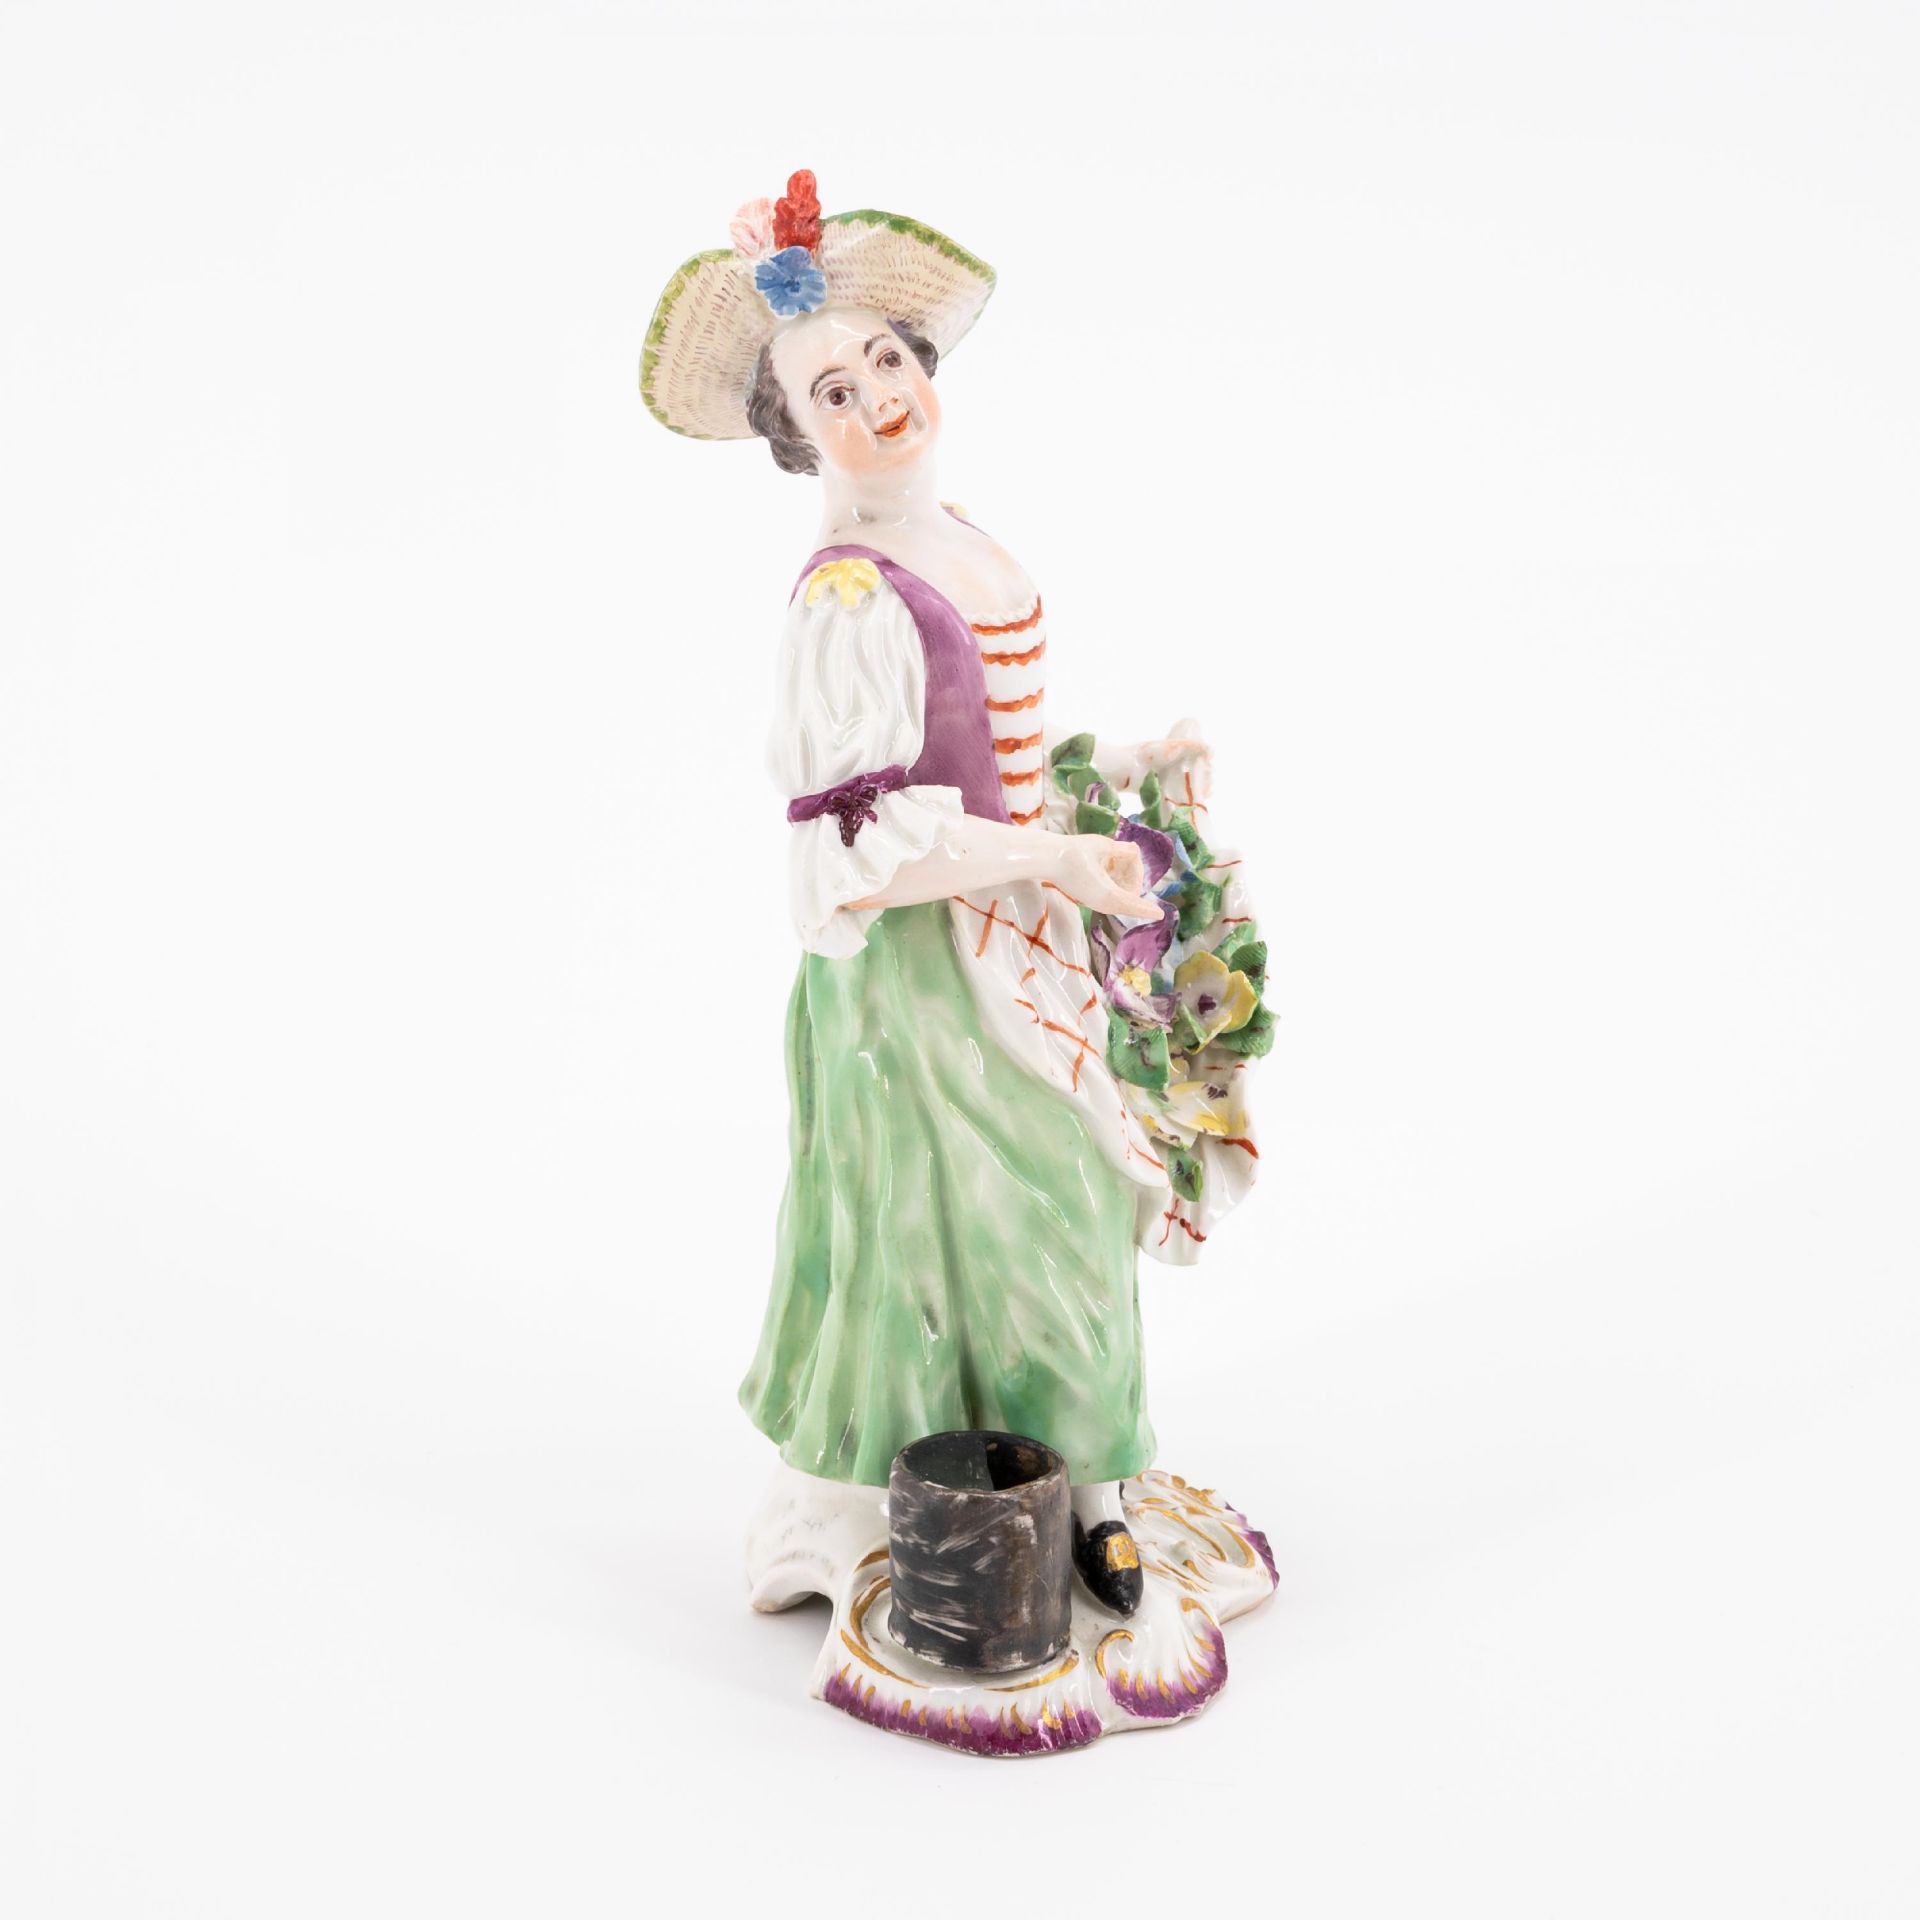 Dame mit Strohhut und Blumenschürze - Bild 4 aus 5